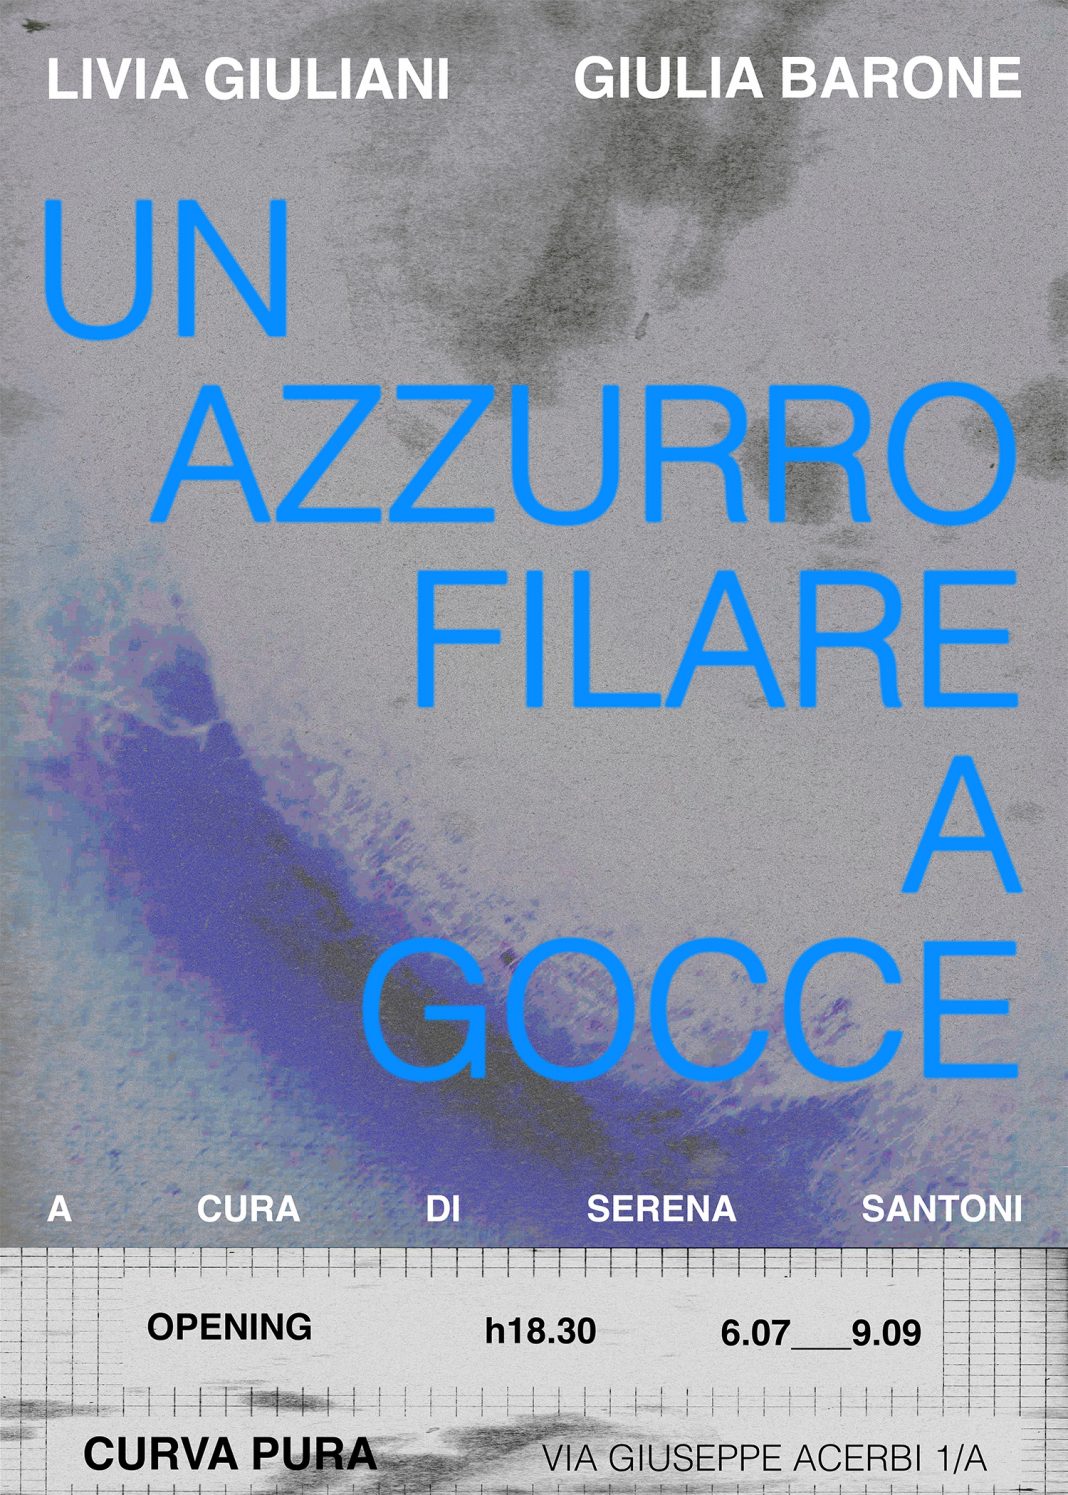 Giulia Barone / Livia Giuliani – Un azzurro filare a goccehttps://www.exibart.com/repository/media/formidable/11/img/84c/locandina-ridotta-1068x1495.jpg